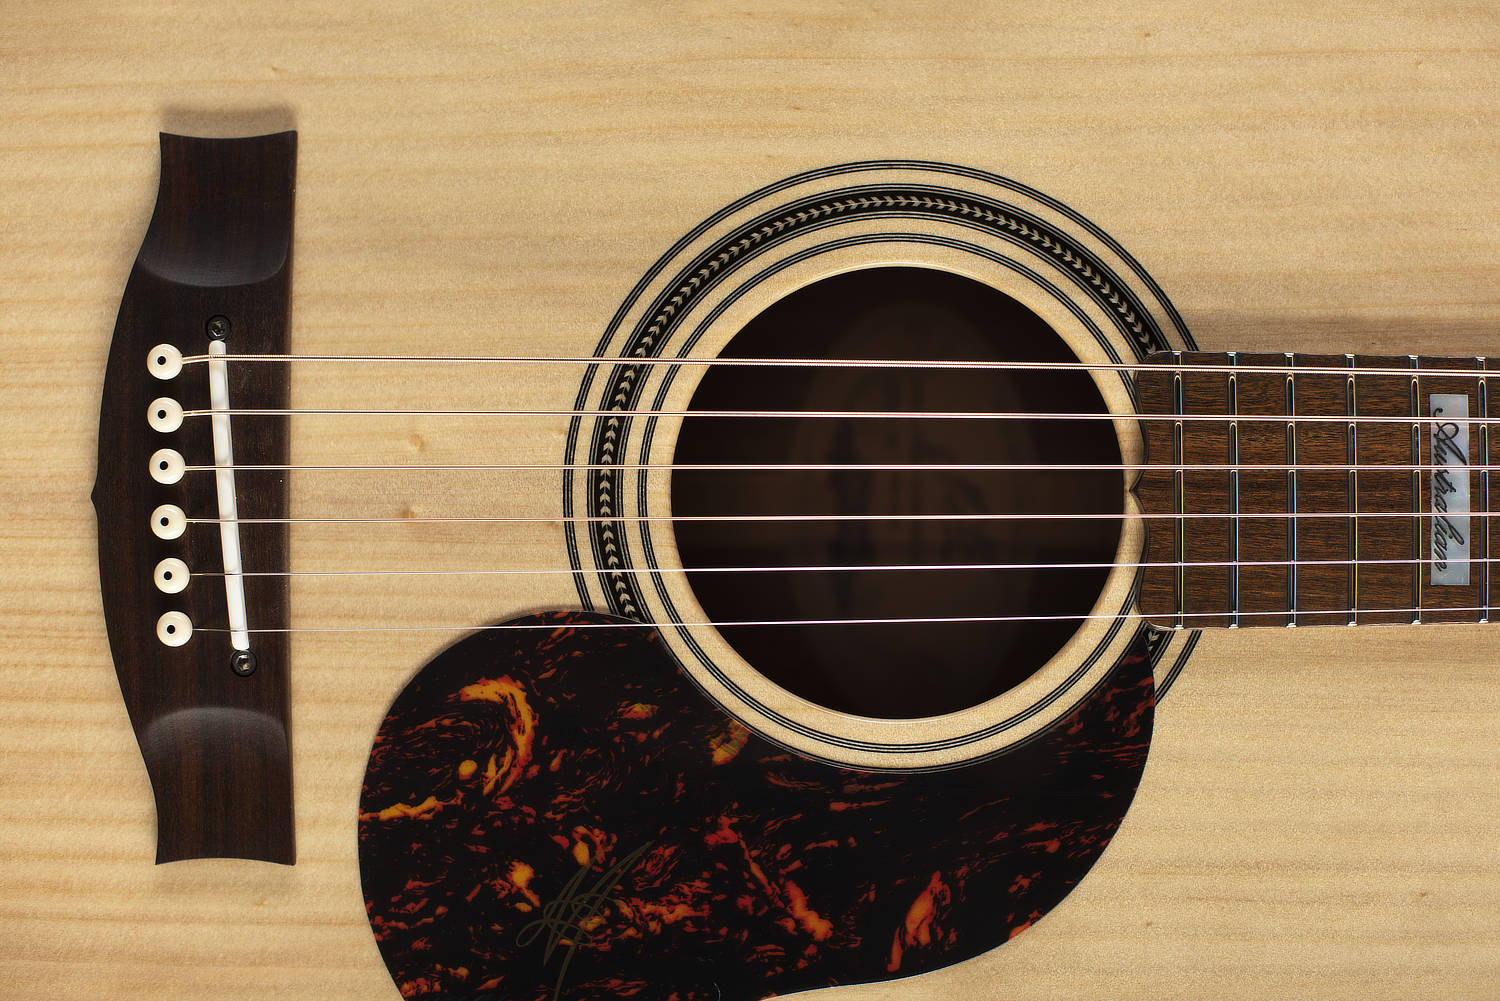 Maton 'The Australian' EA808 Acoustic Guitar